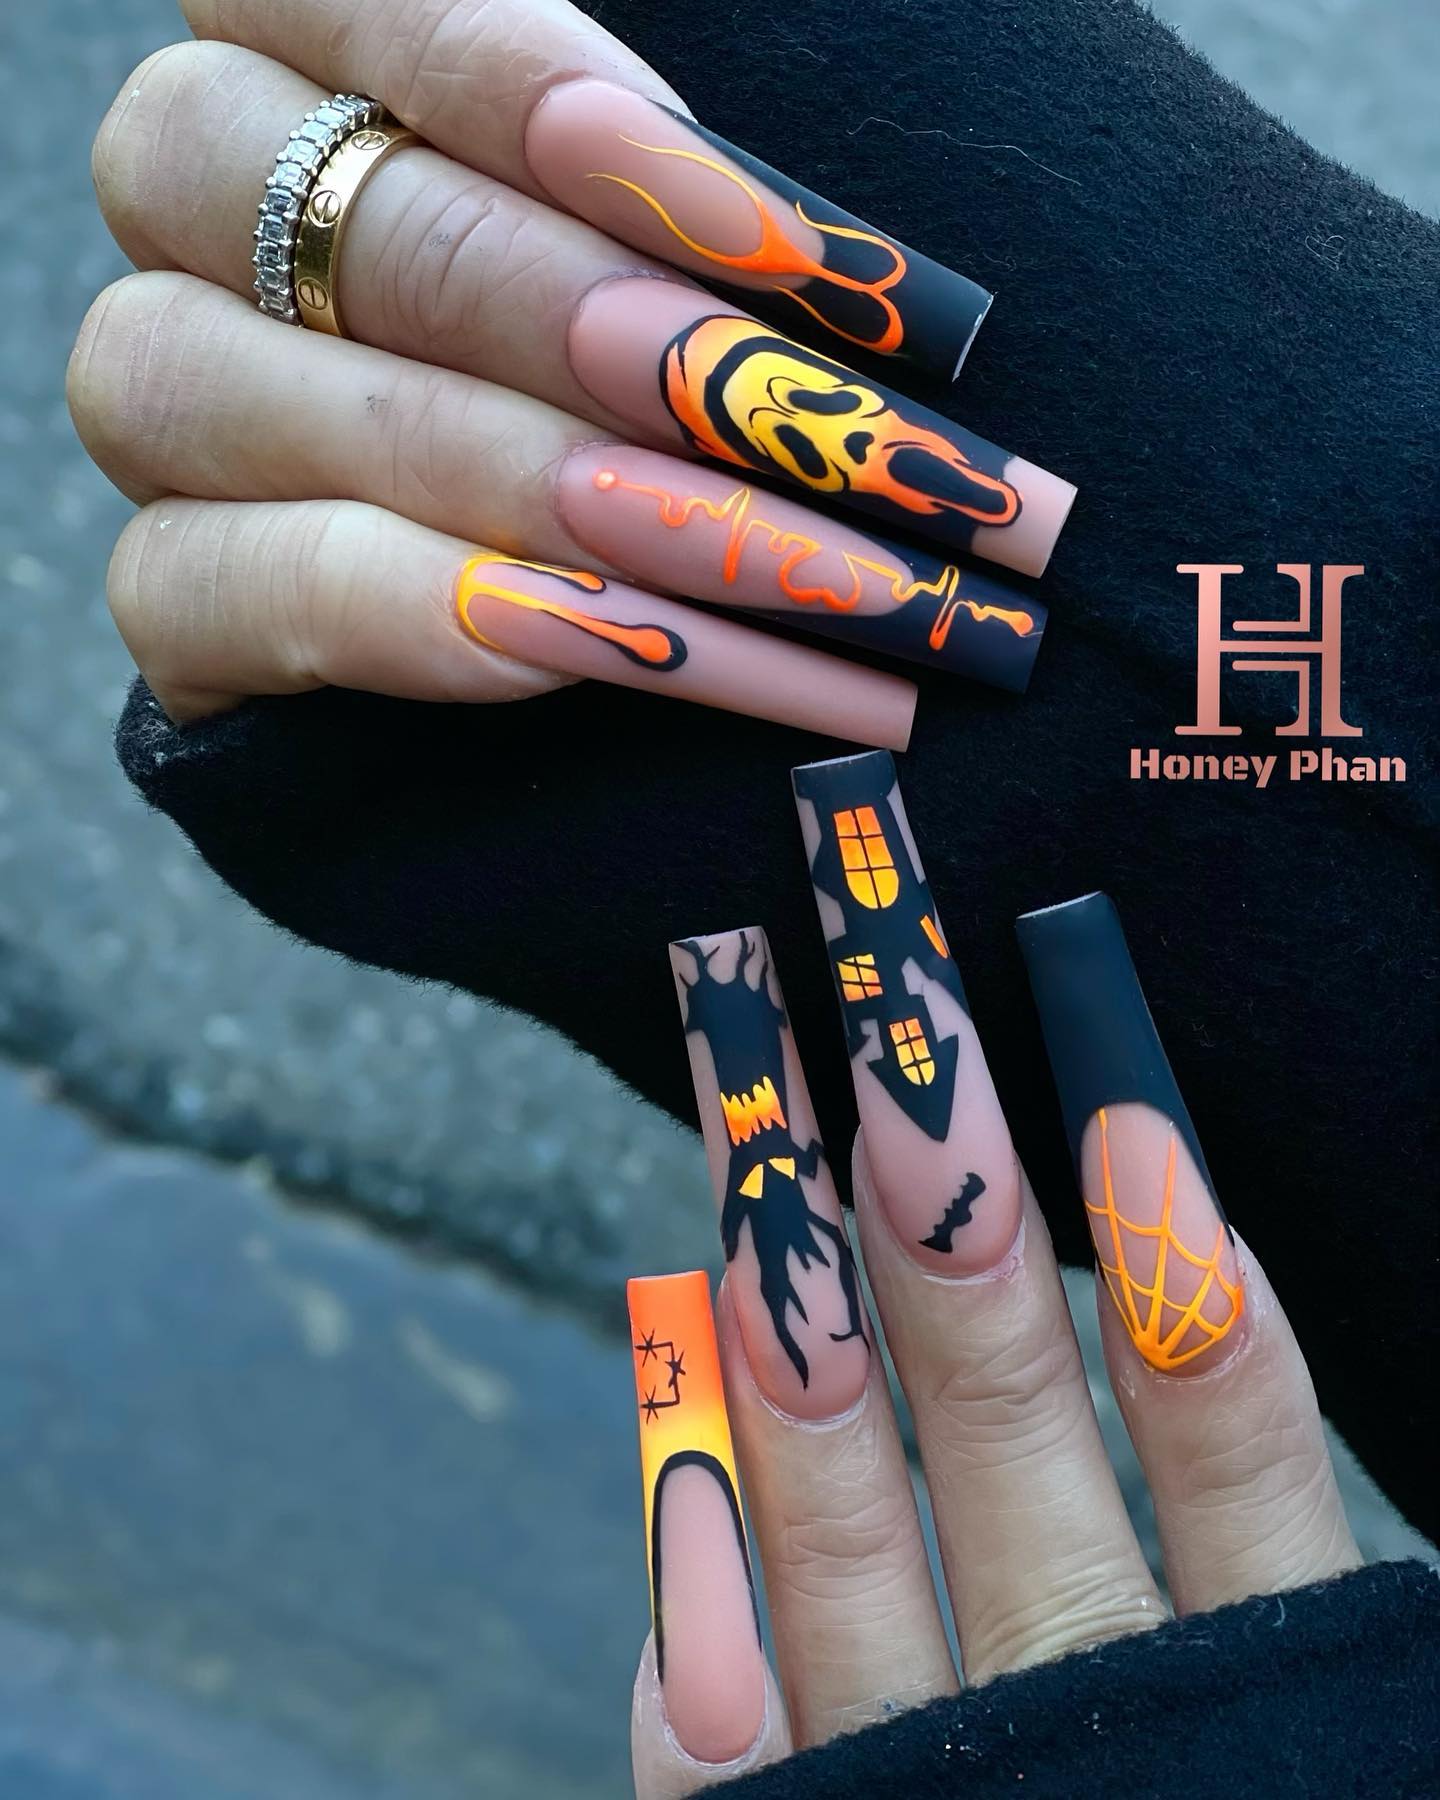 Kolejny przykład długich wciskanych paznokci pomalowanych w Halloweenowe opowieści w połączeniu czerni i pomarańczy